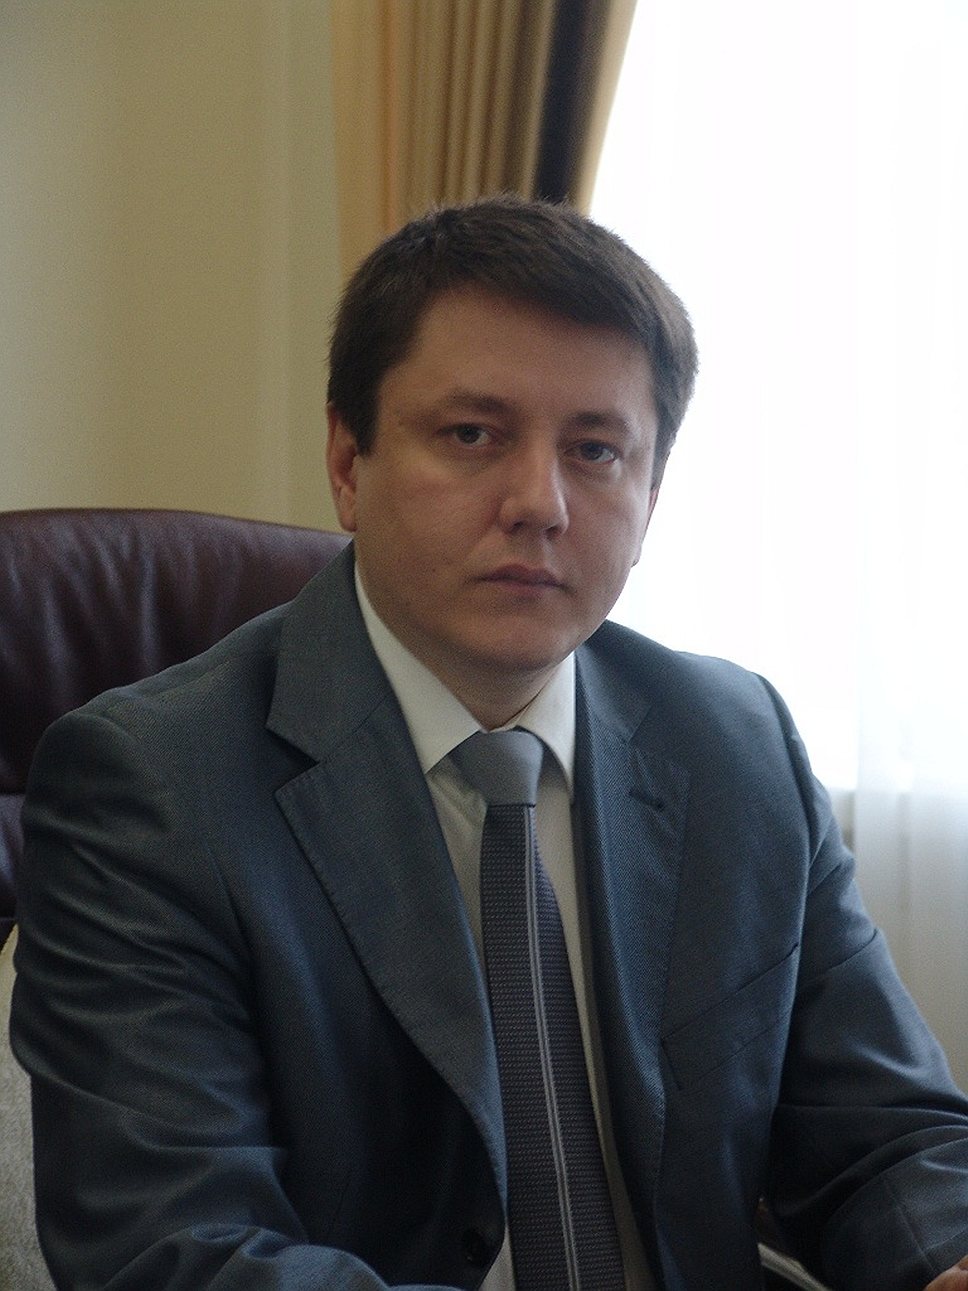 Руководитель департамента имущества Новосибирской области Роман Шилохвостов